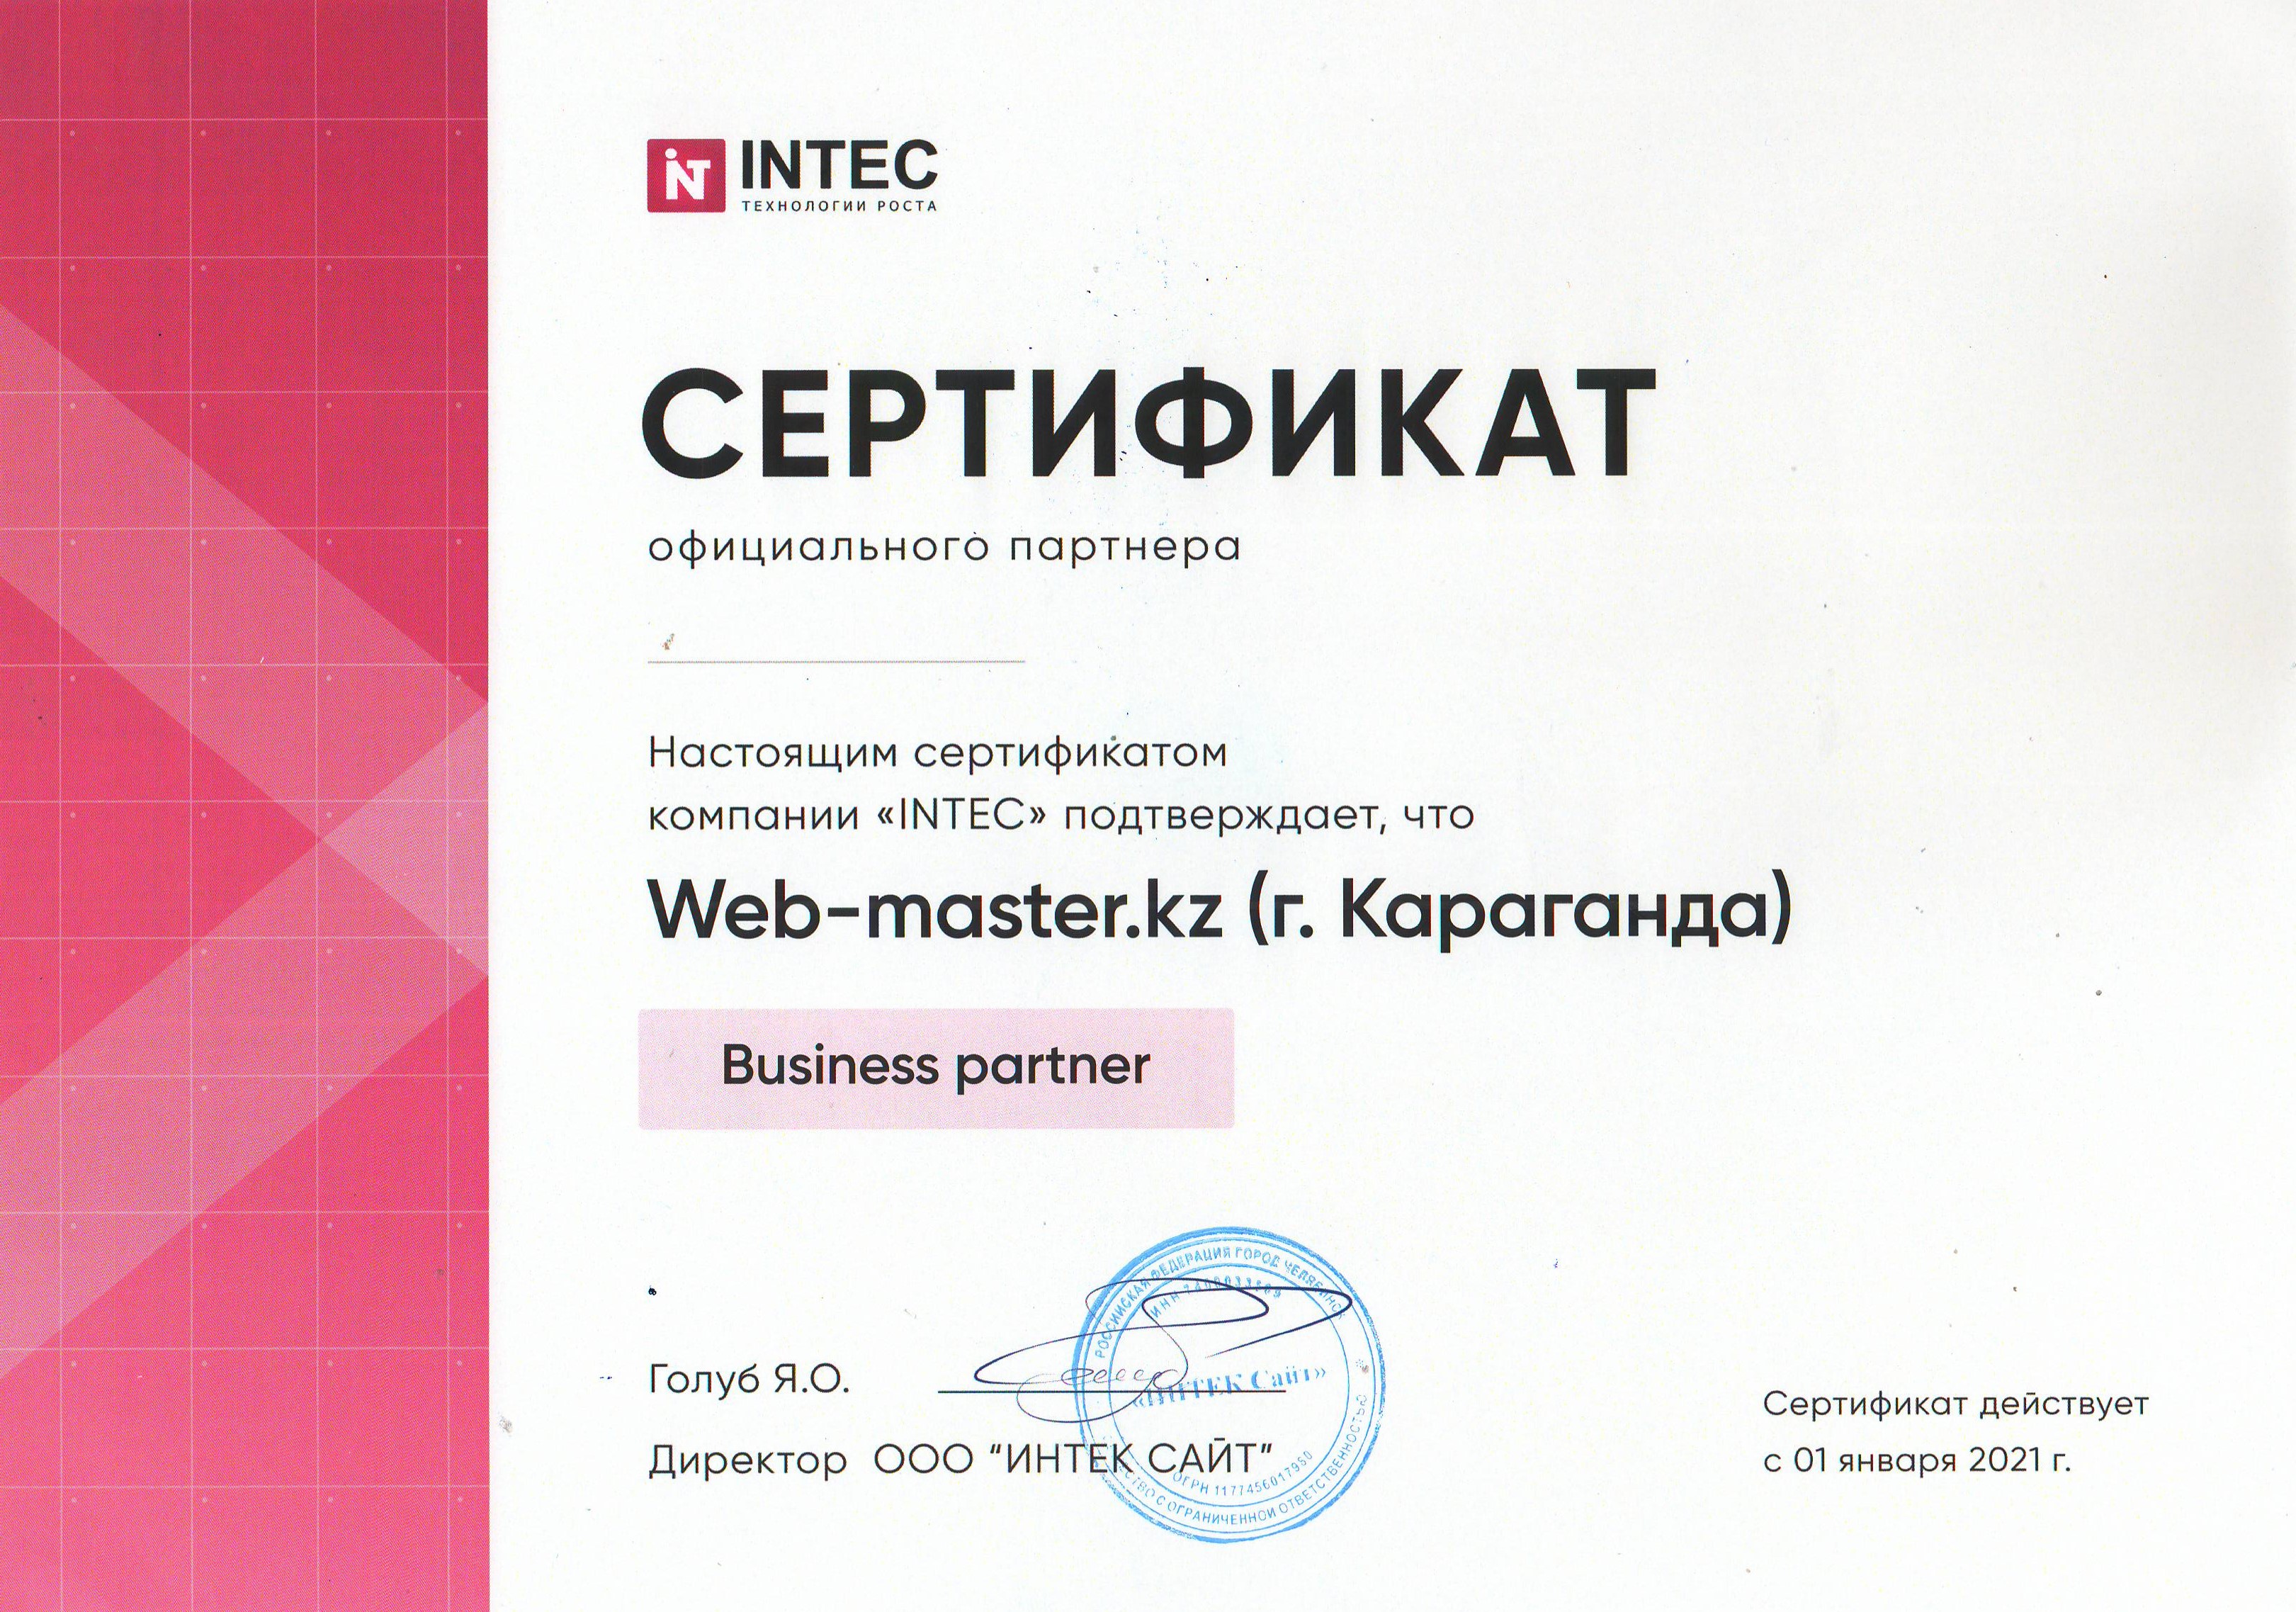 Бизнес-партнер компании INTEC